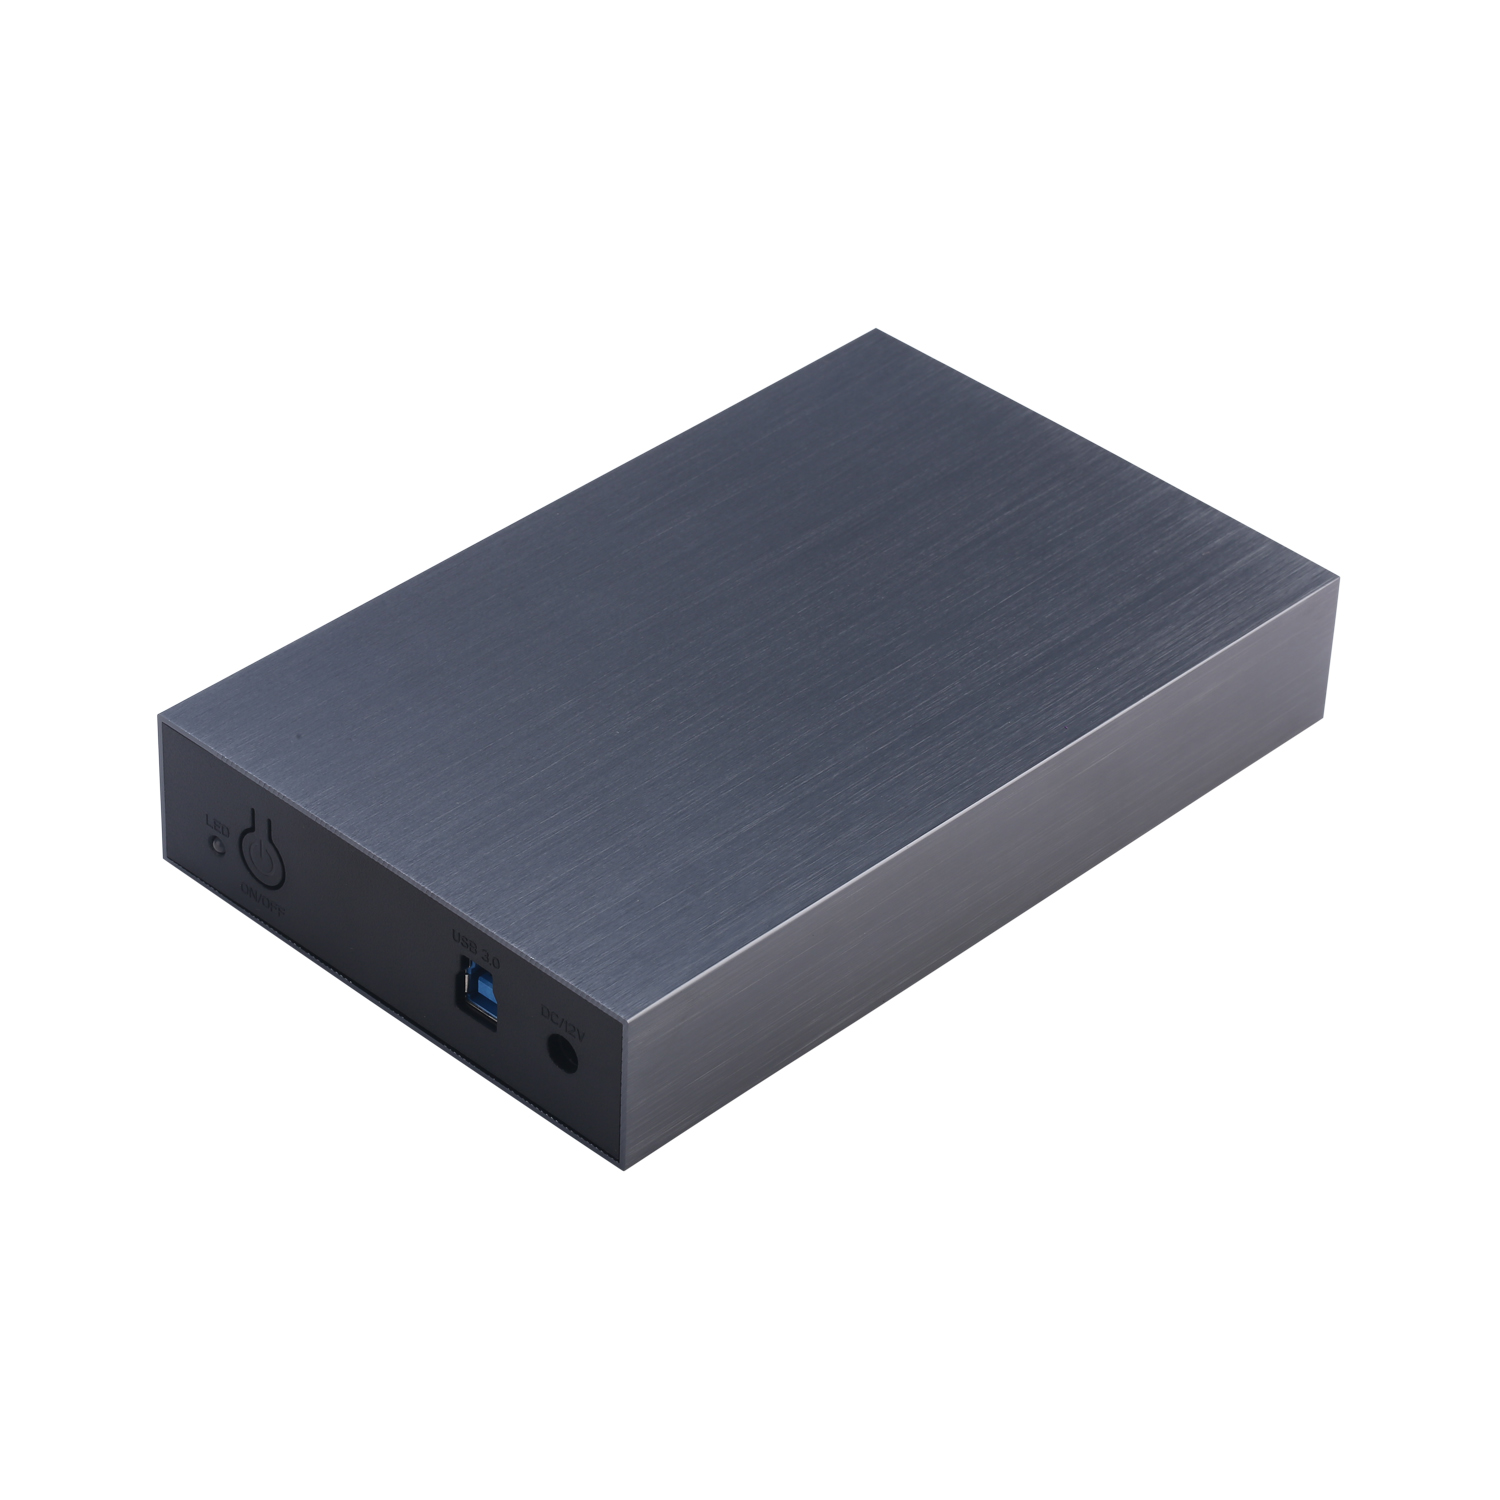 UA005 External HDD enclosure 3,5 inch, SATA, USB 3.0